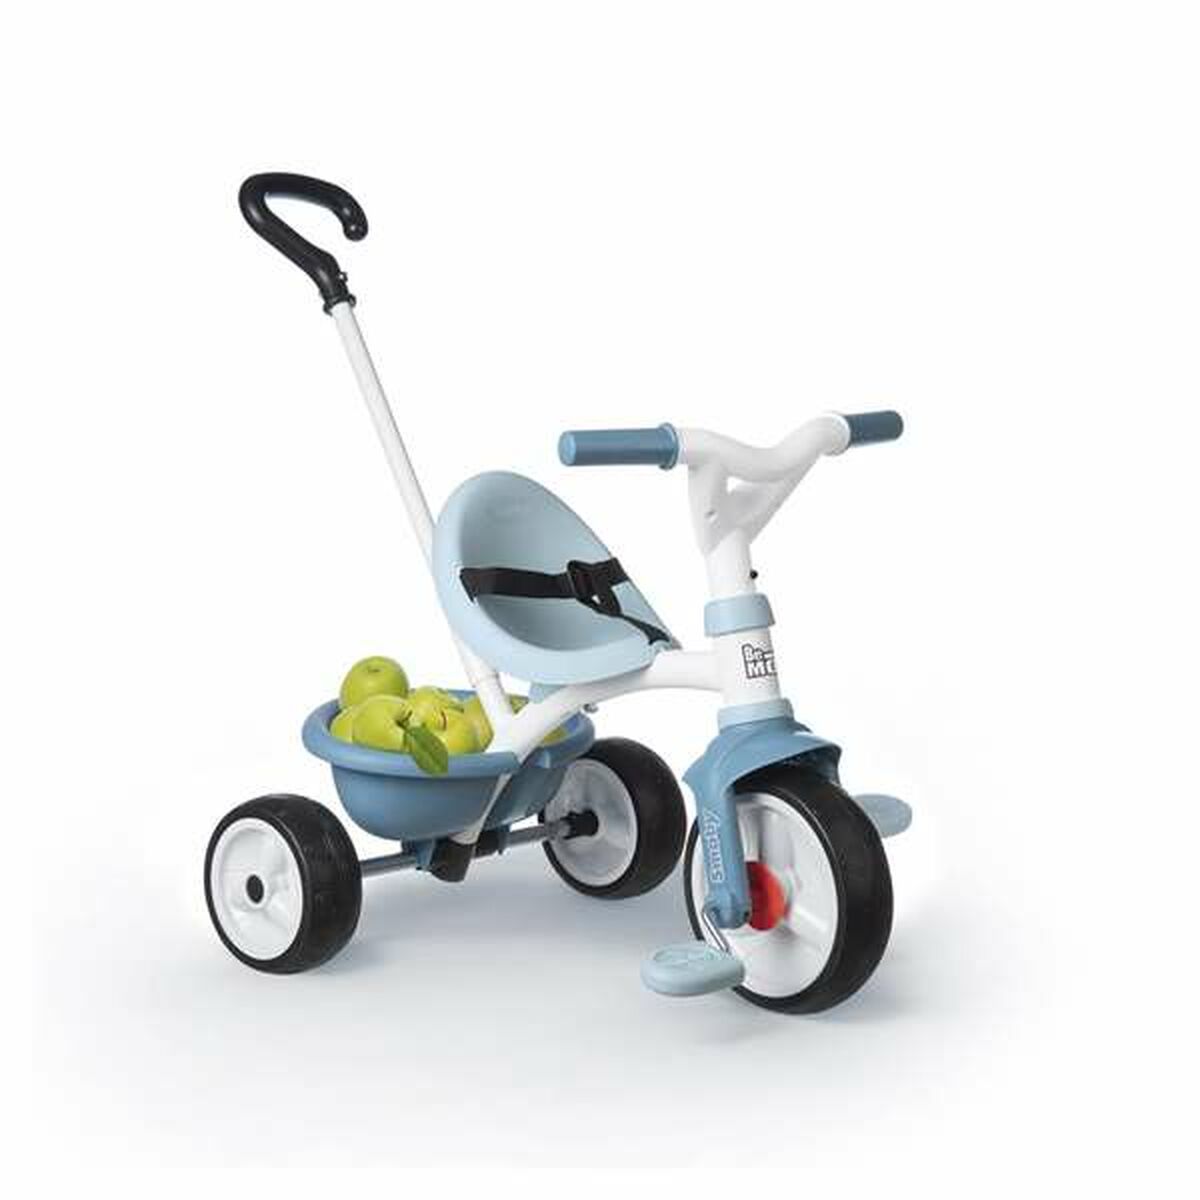 Trehjuling Smoby Be Move Blå-Leksaker och spel, Sport och utomhus-Smoby-peaceofhome.se